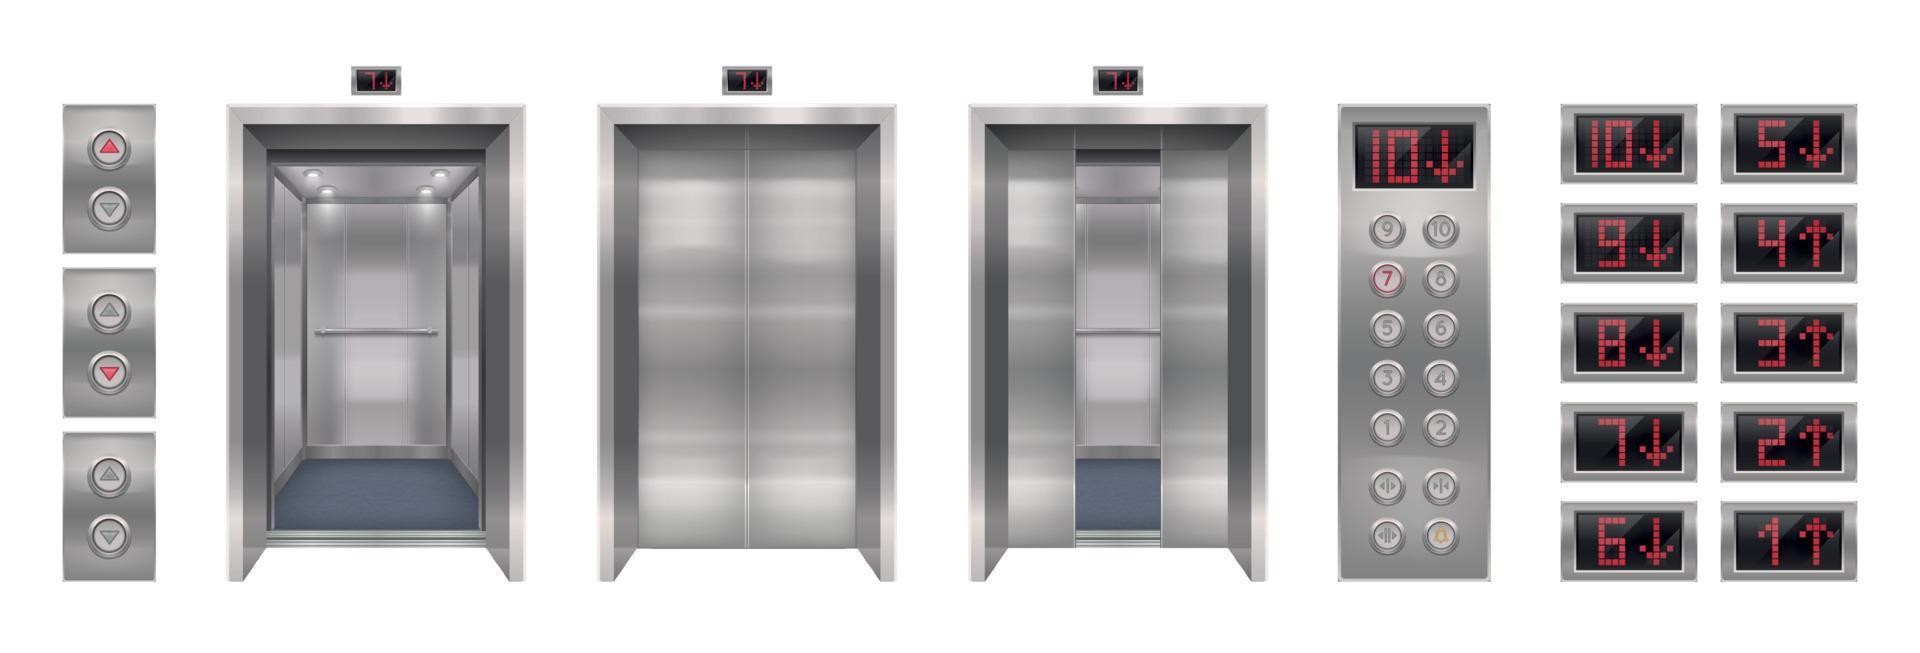 coleção realista de portas de elevador vetor